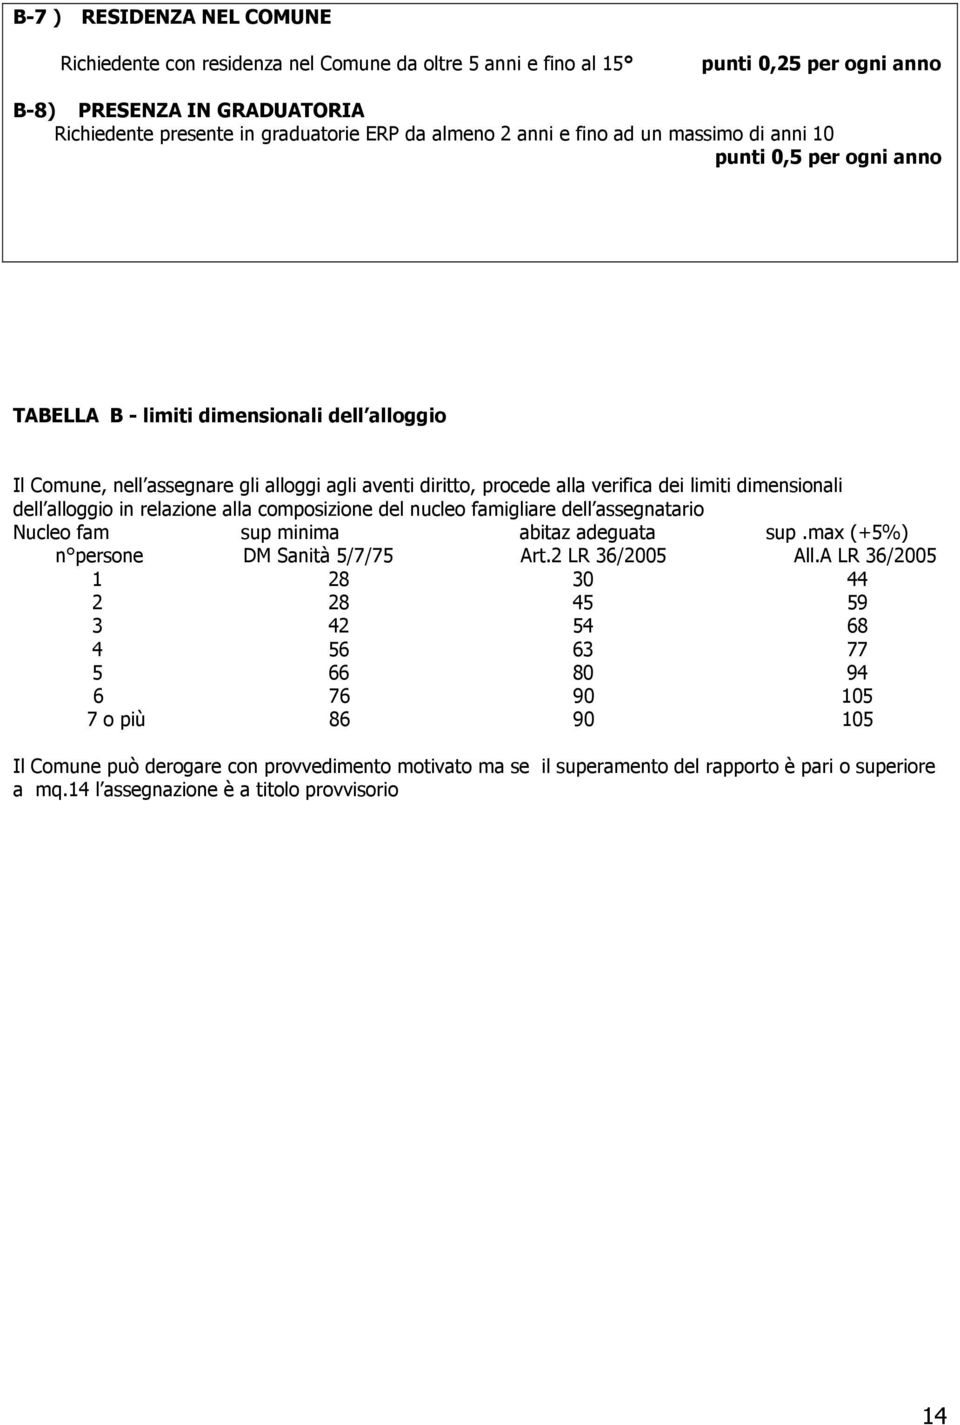 dimensionali dell alloggio in relazione alla composizione del nucleo famigliare dell assegnatario Nucleo fam sup minima abitaz adeguata sup.max (+5%) n persone DM Sanità 5/7/75 Art.2 LR 36/2005 All.